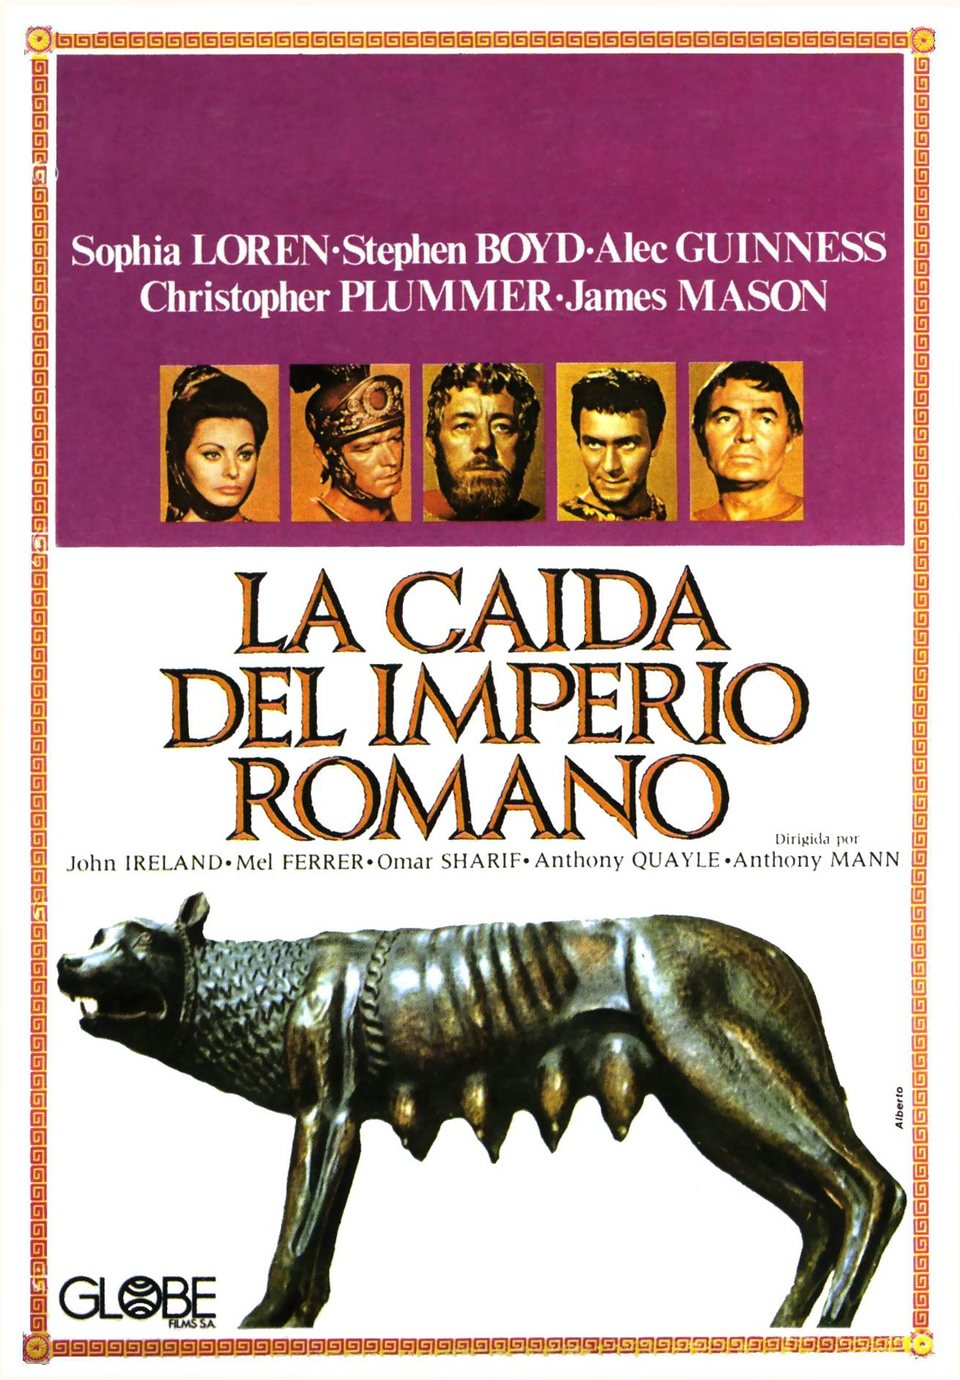 Film Pád říše římské